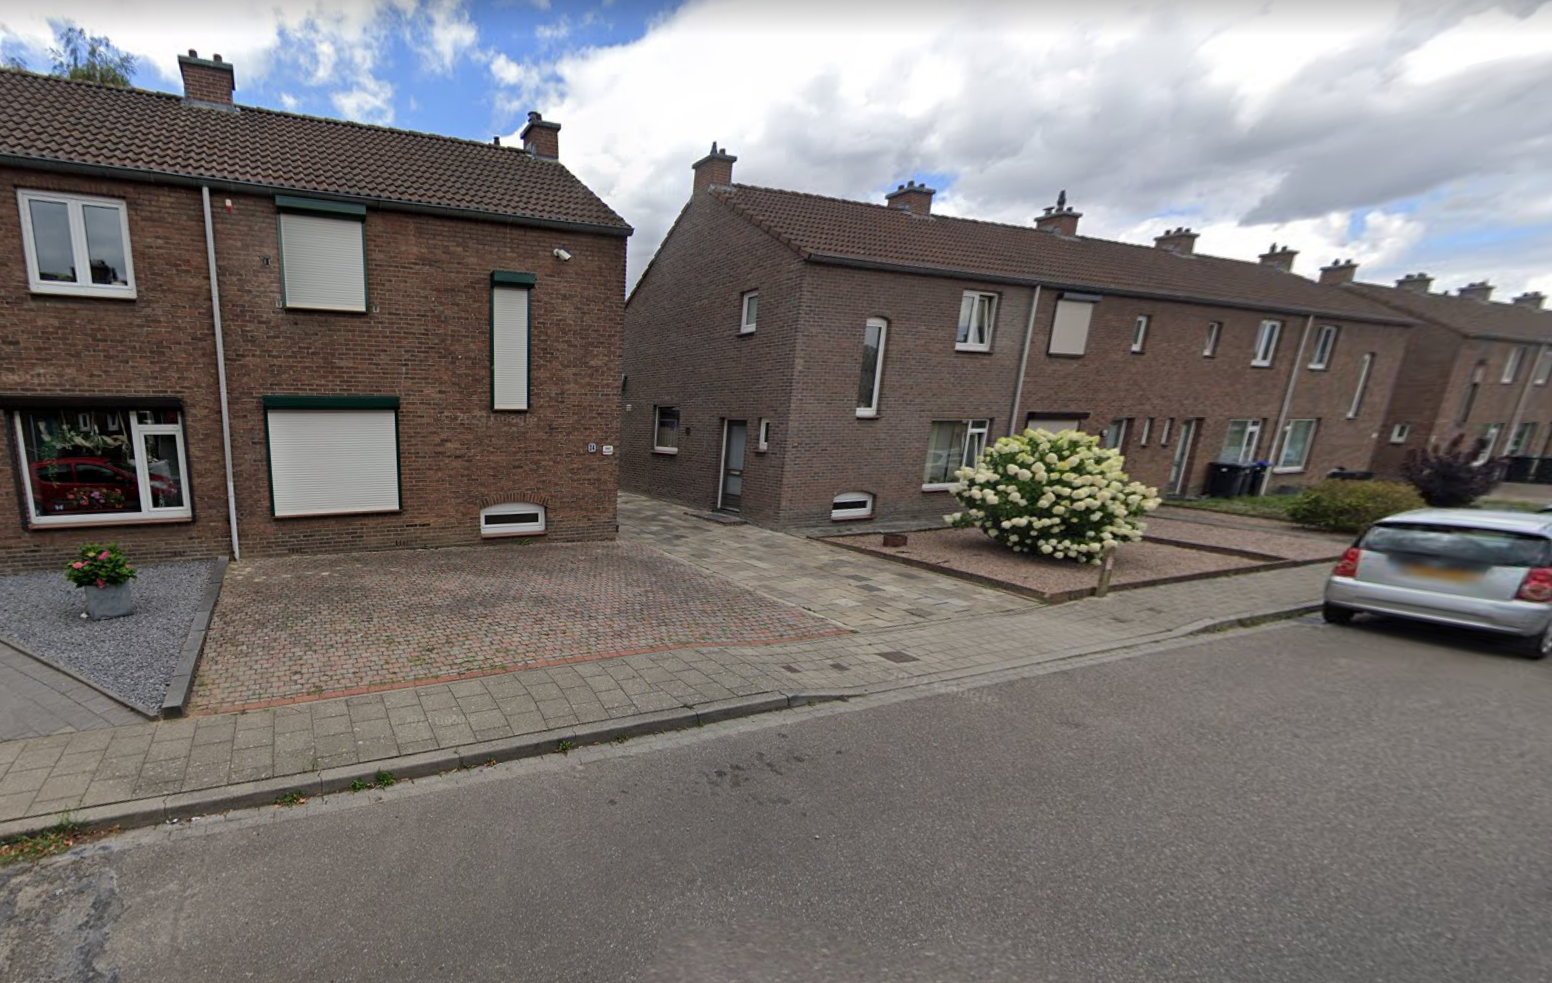 Lodewijkstraat 32, 6433 GT Hoensbroek, Nederland